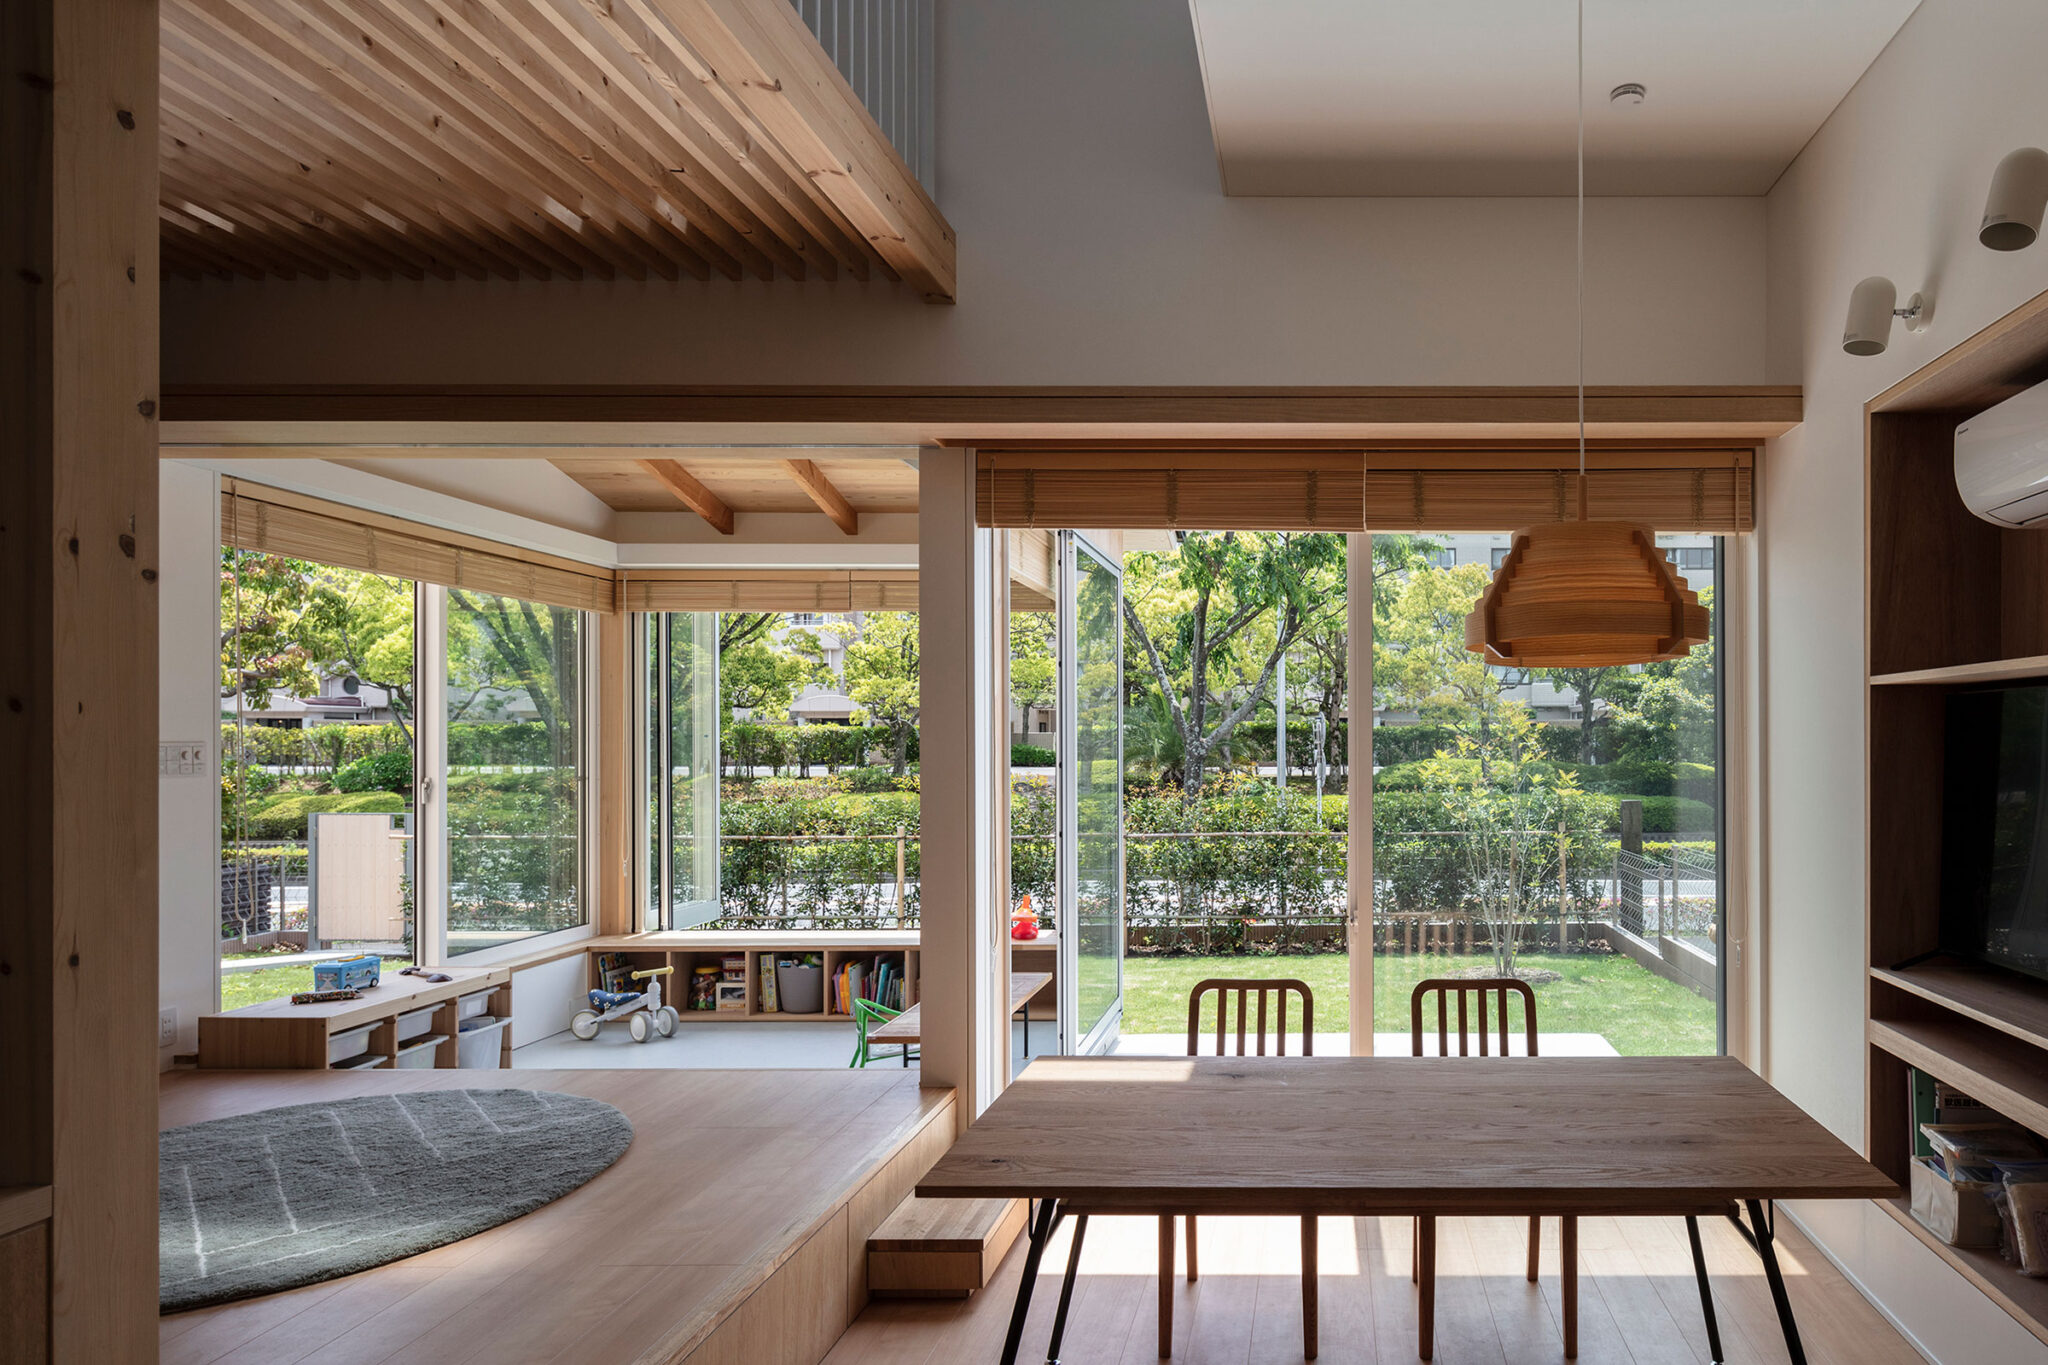 岸本吉正設計事務所による、神奈川の「HouseH」。郊外の住宅地に計画